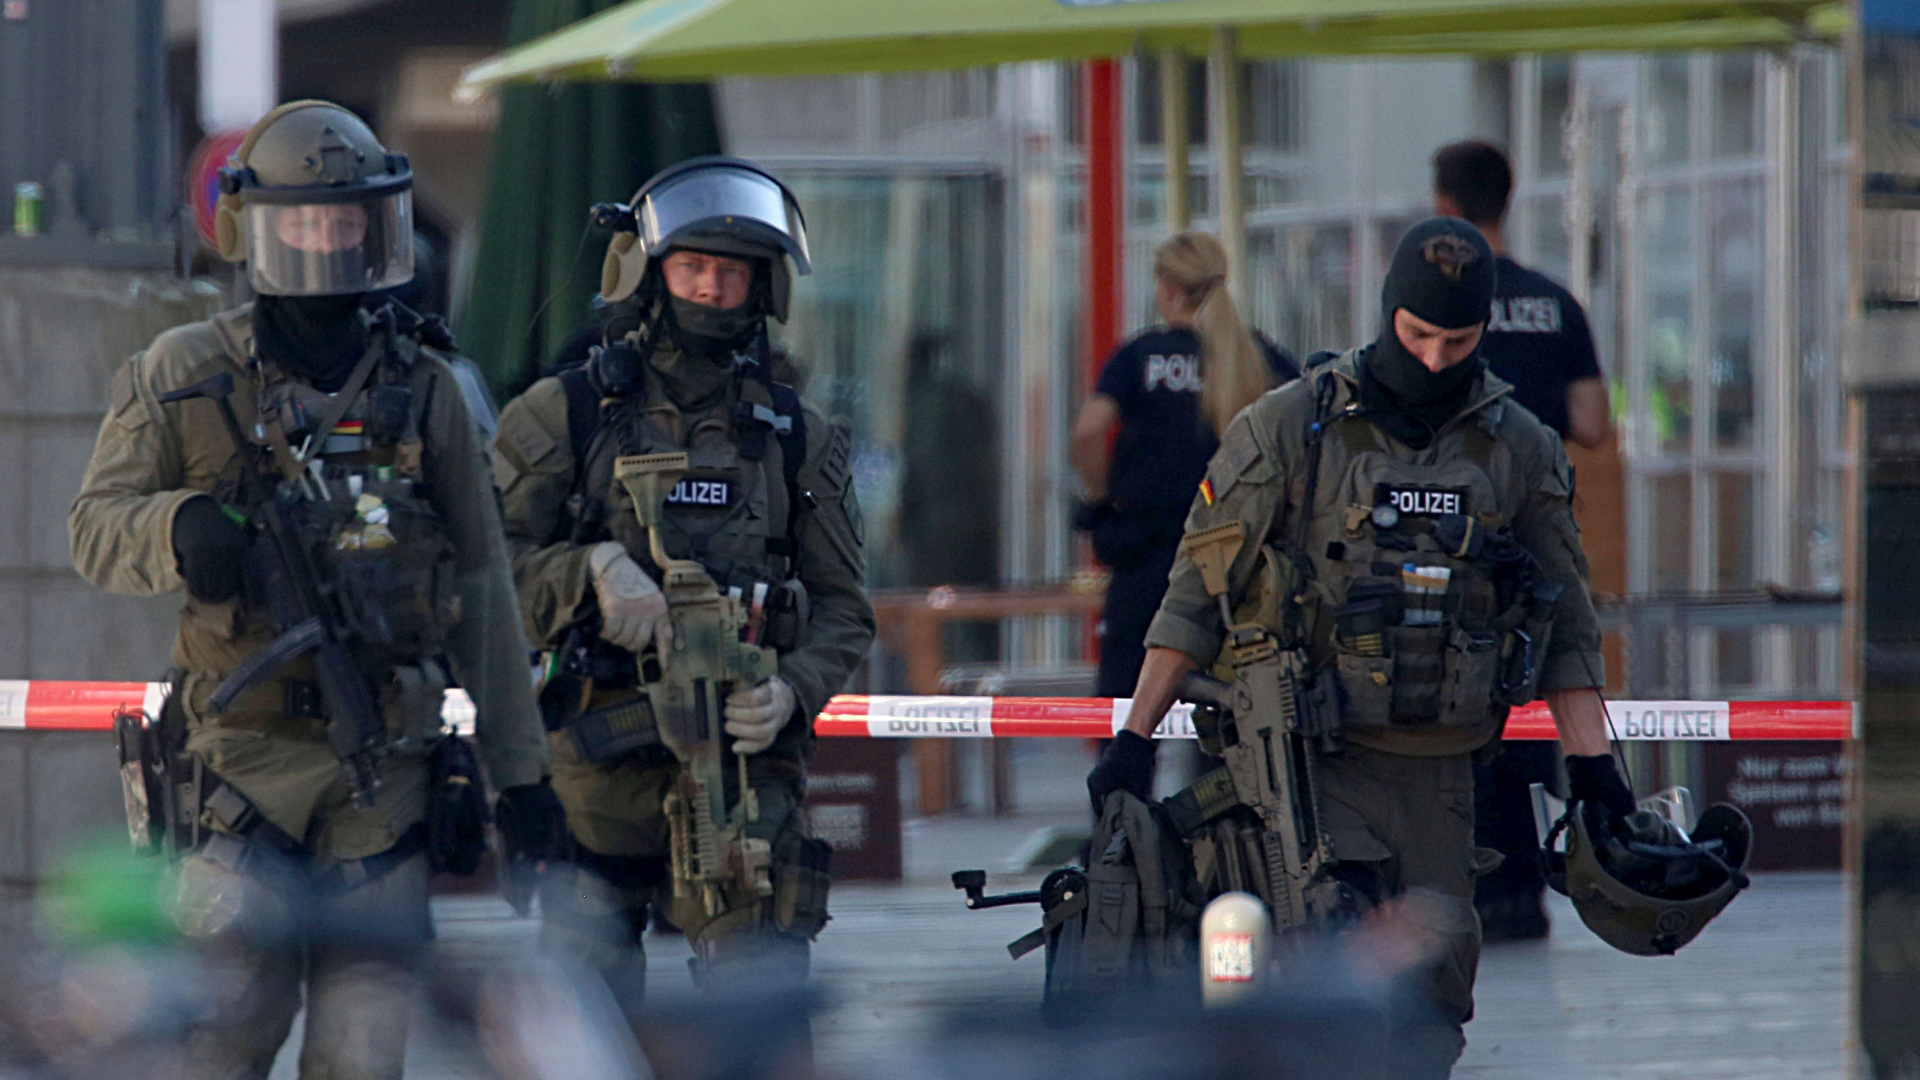 Polizeibeamte verlassen den Kölner Hauptbahnhof. | Bildquelle: dpa